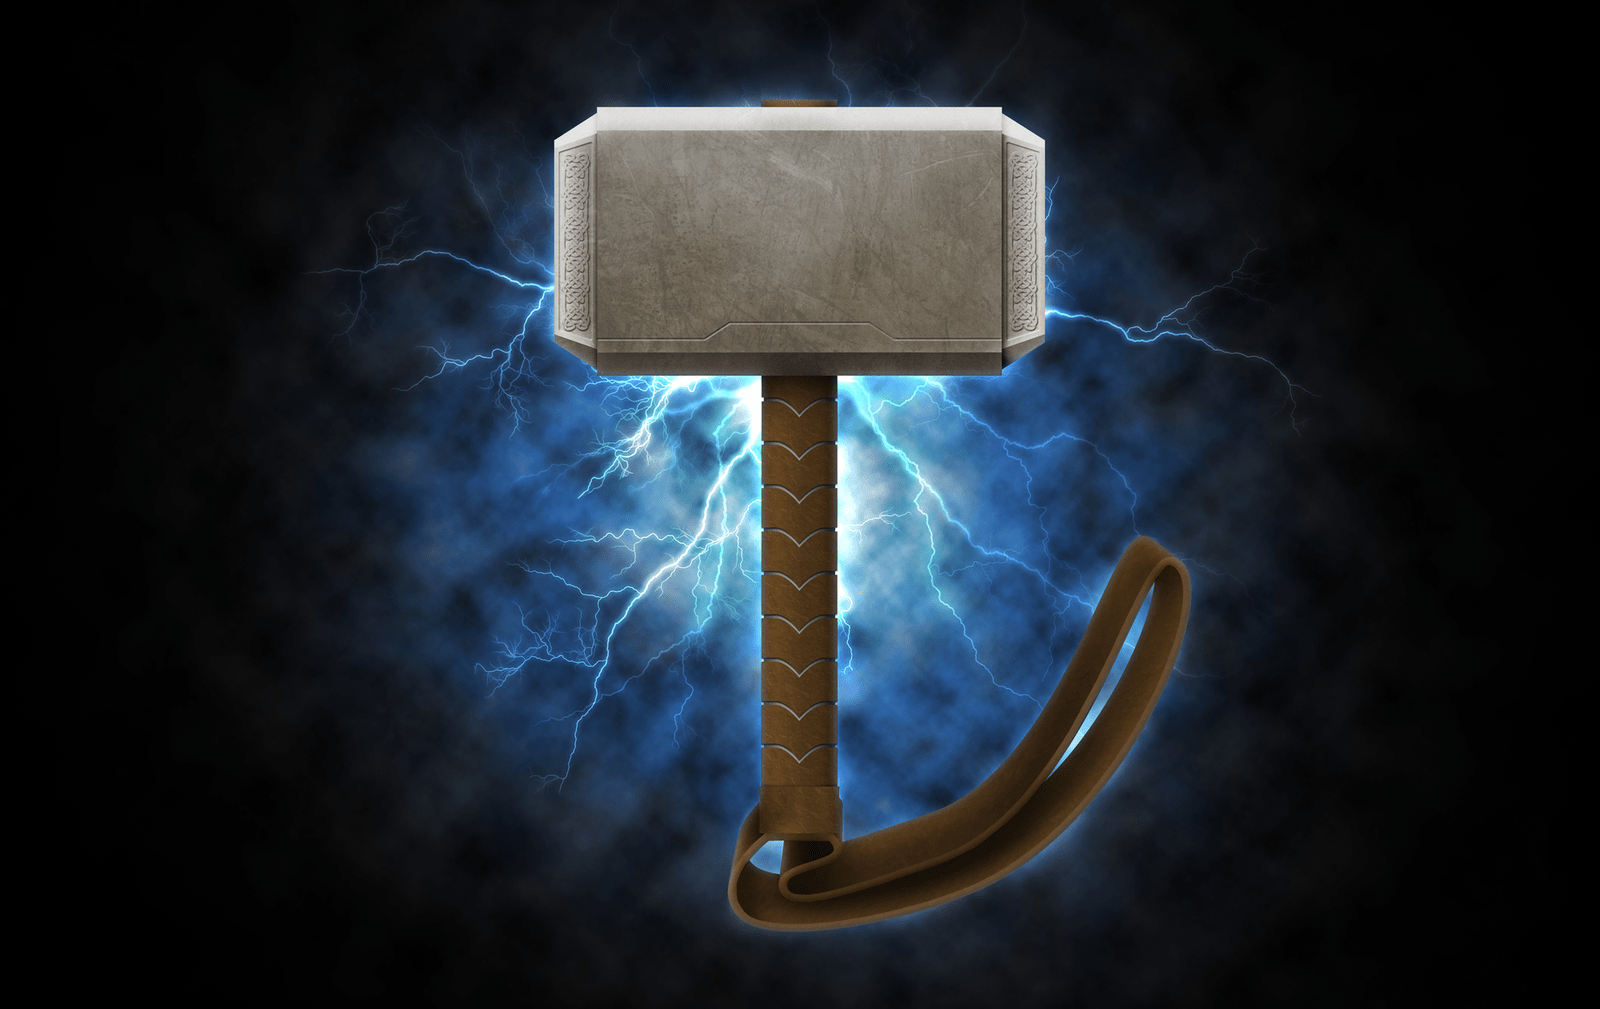 Hammer of Thor cho thời kỳ khó khăn